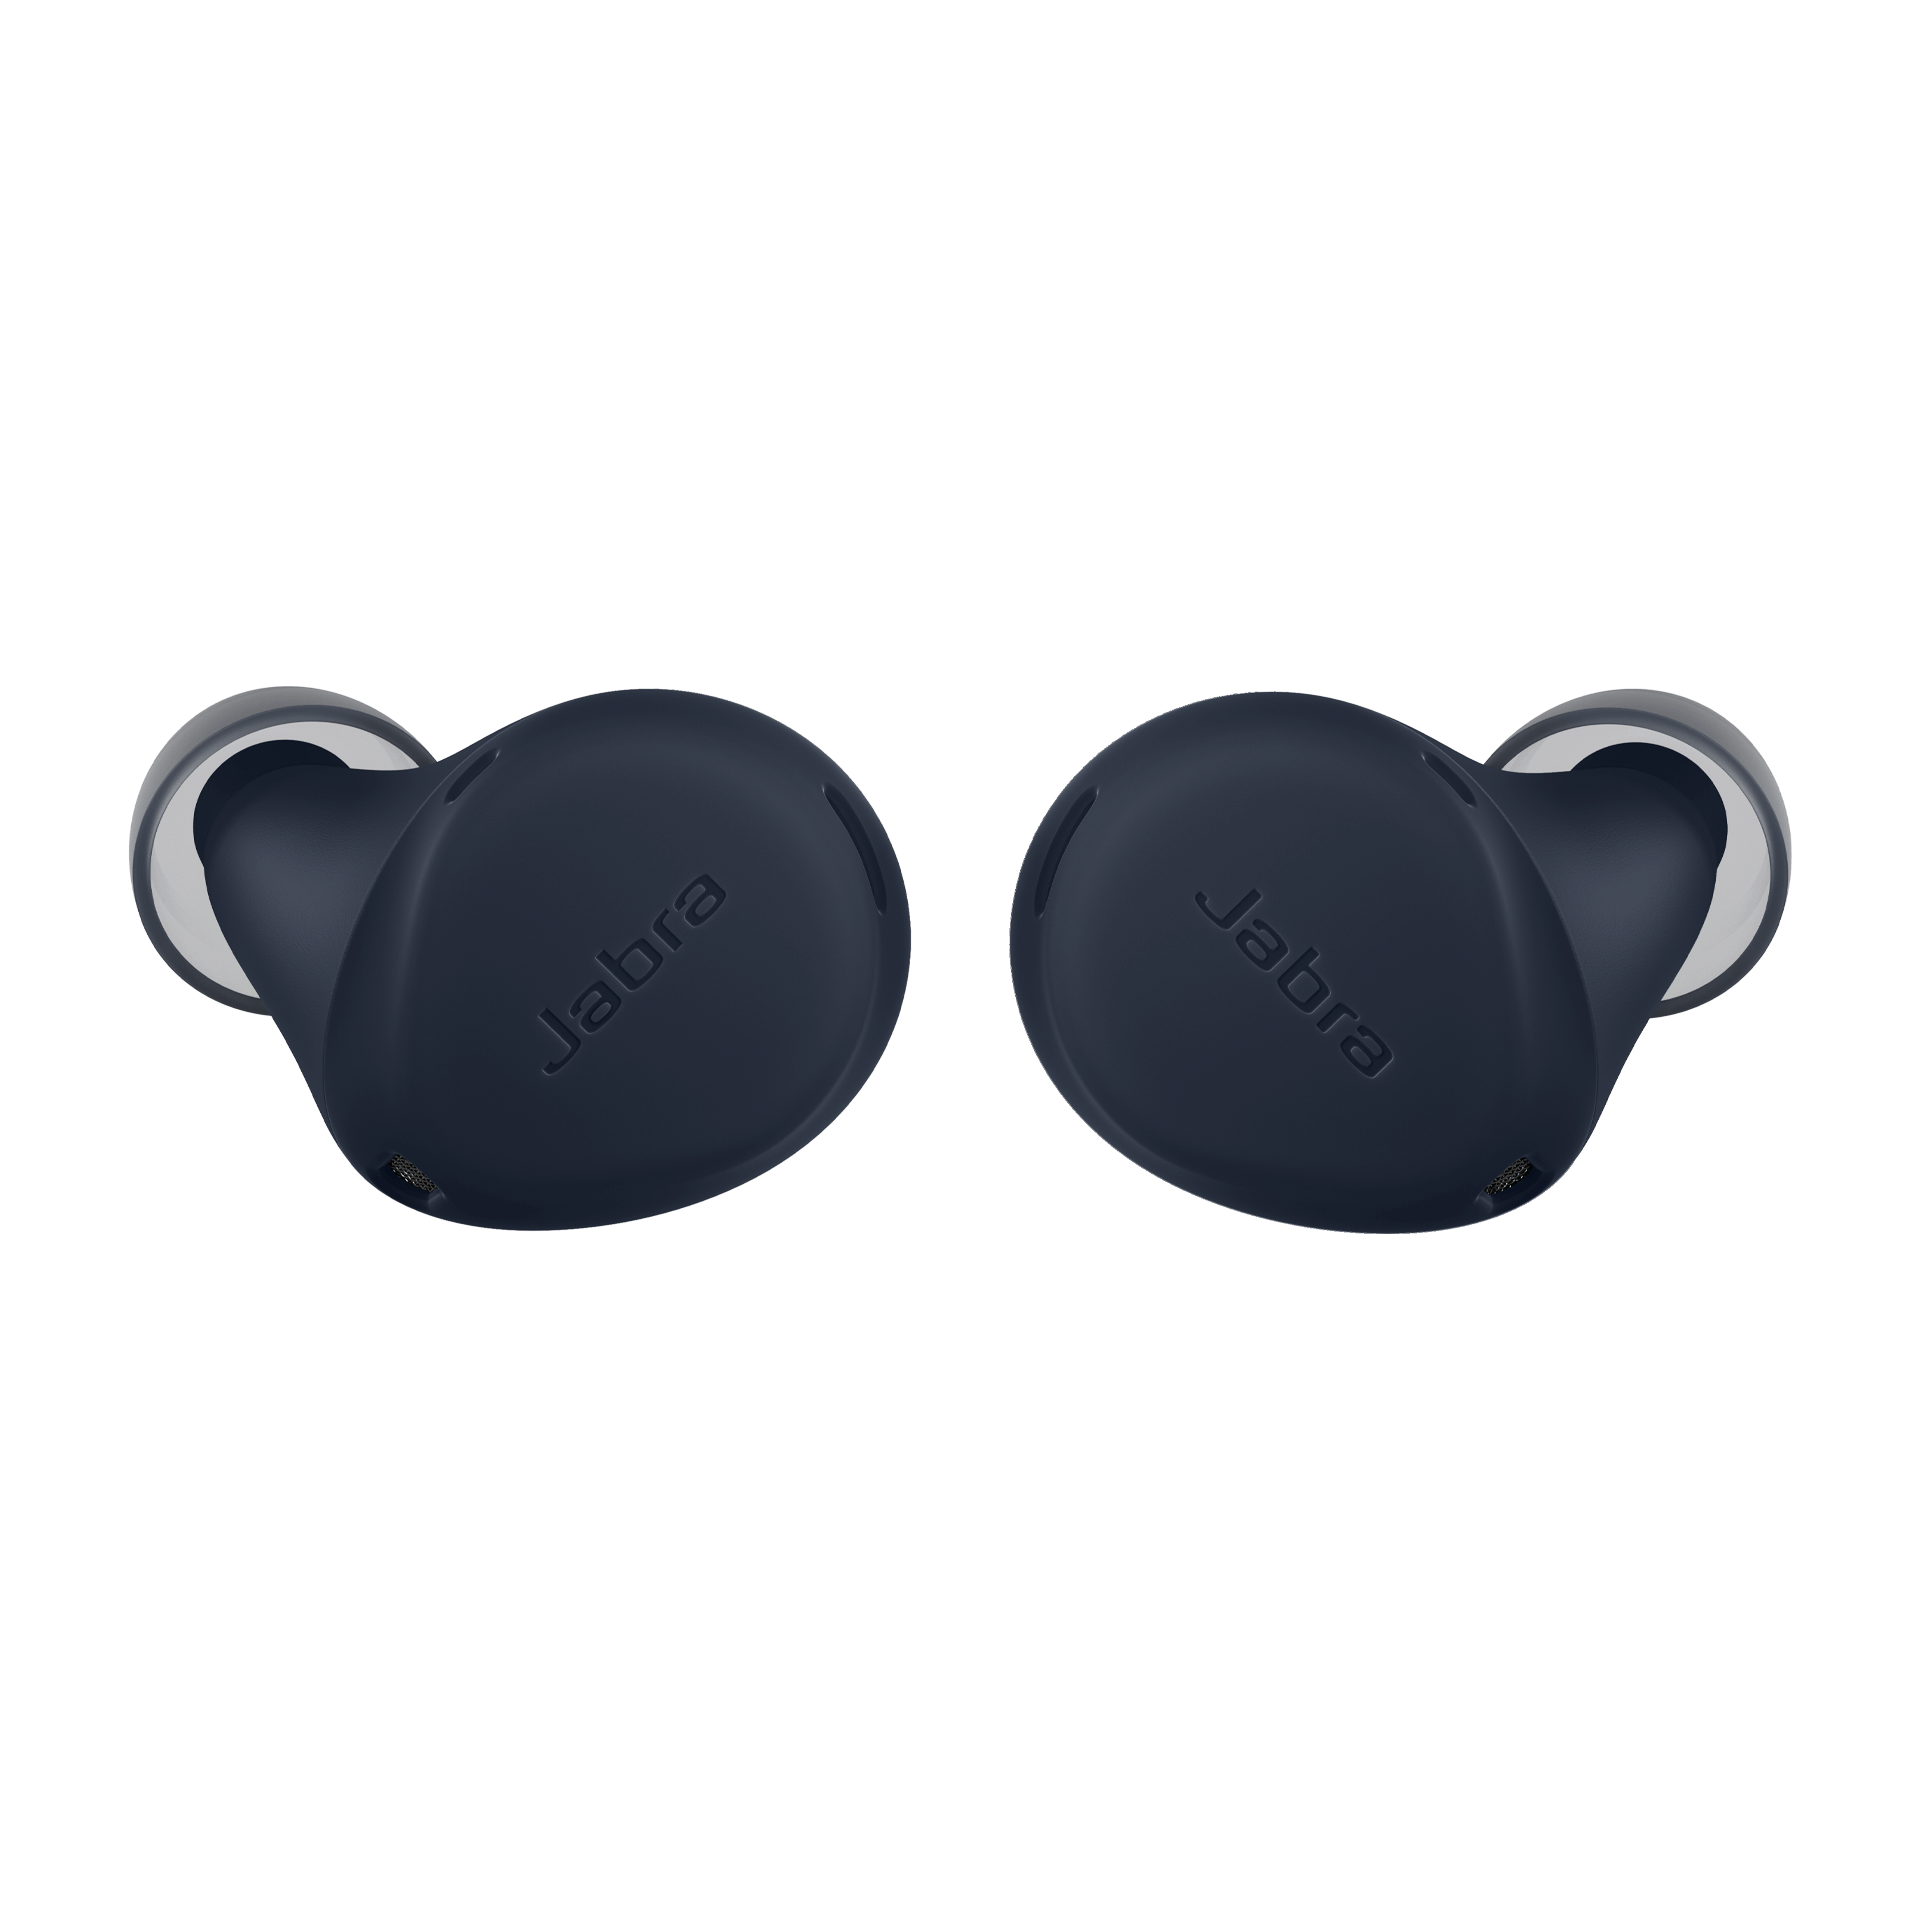 Jabra Elite 7 Active Replacement Earbuds - Navy